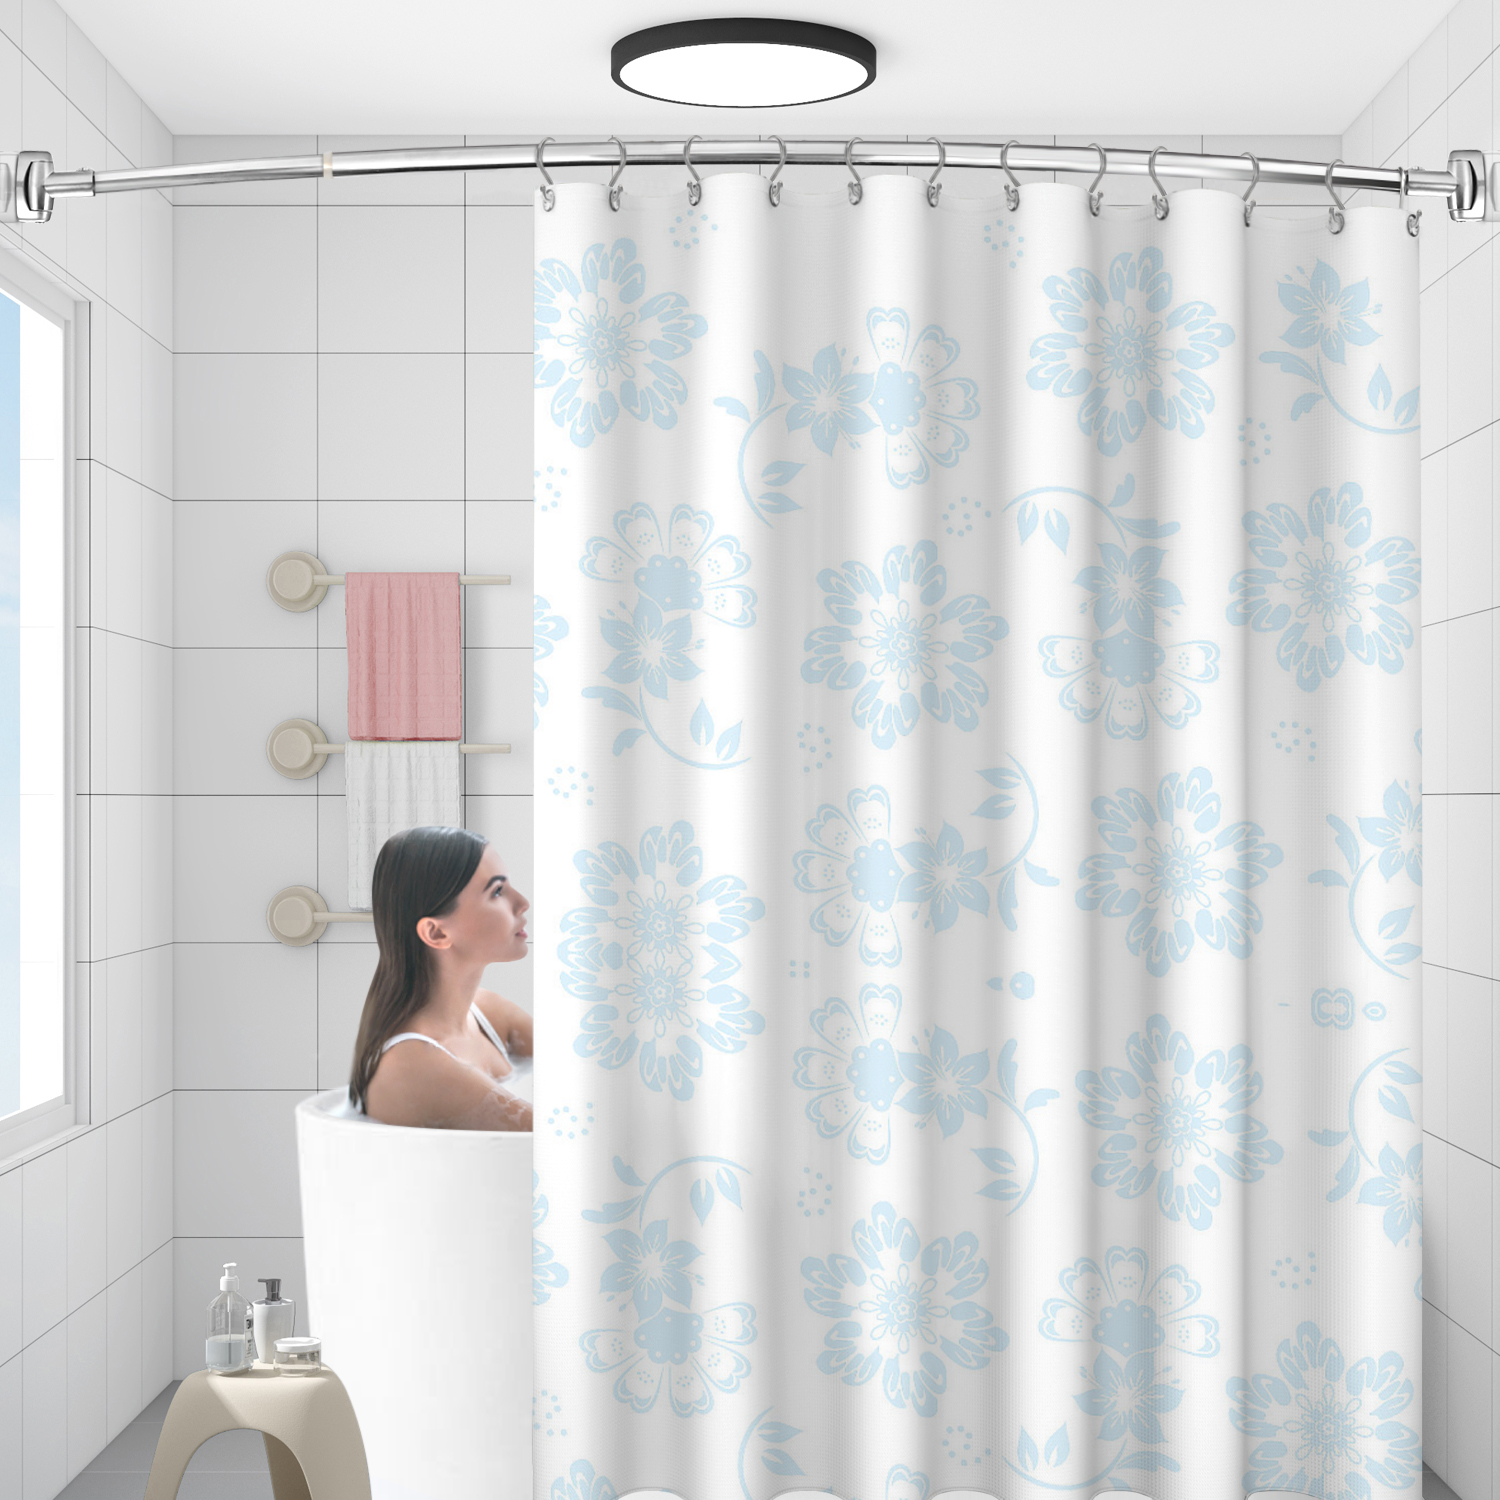 Exquisita barra de ducha de acero inoxidable arqueada, redondeada y ajustable, cromada, personalizada para bañera